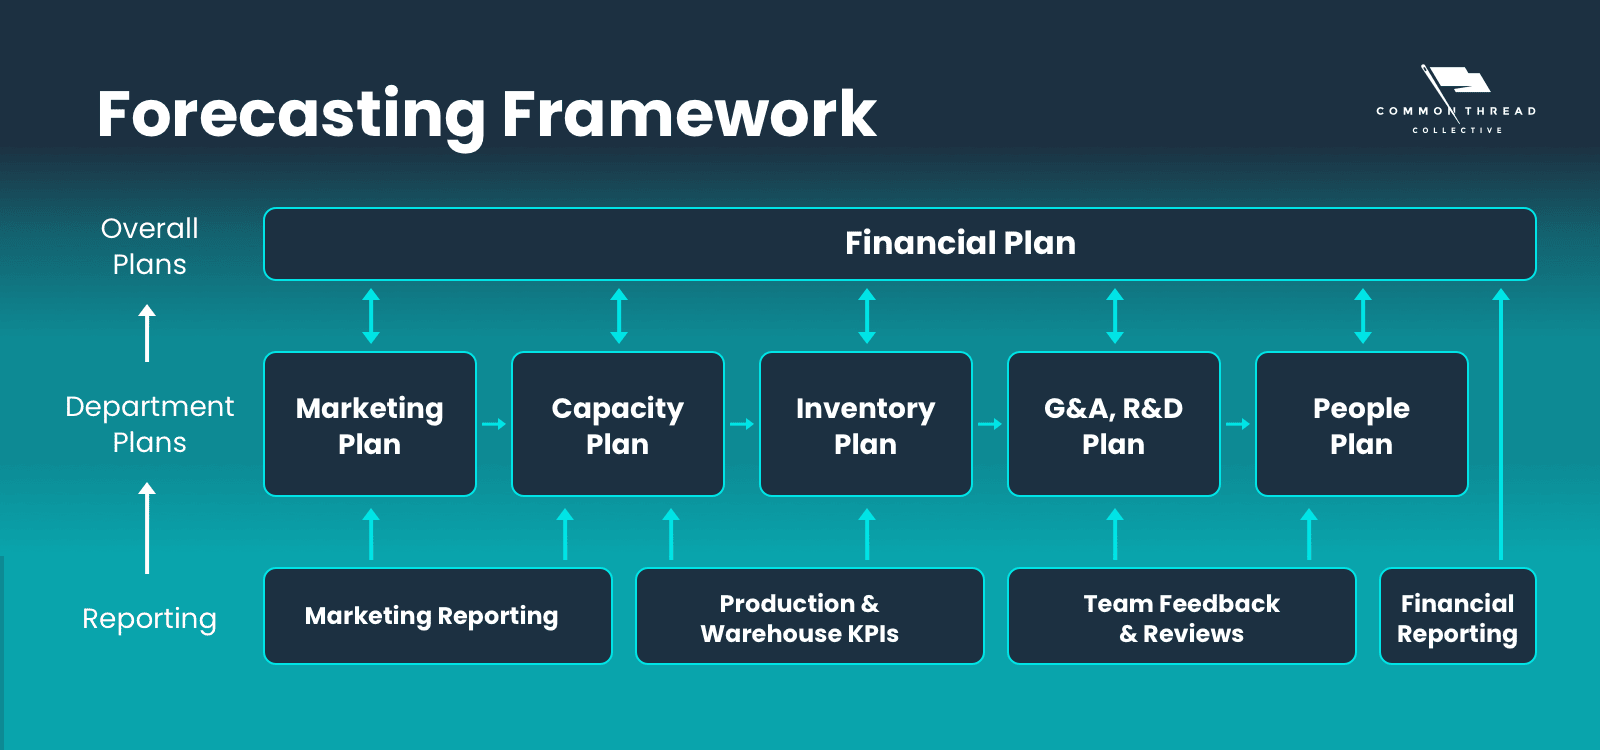 Forecasting Framework